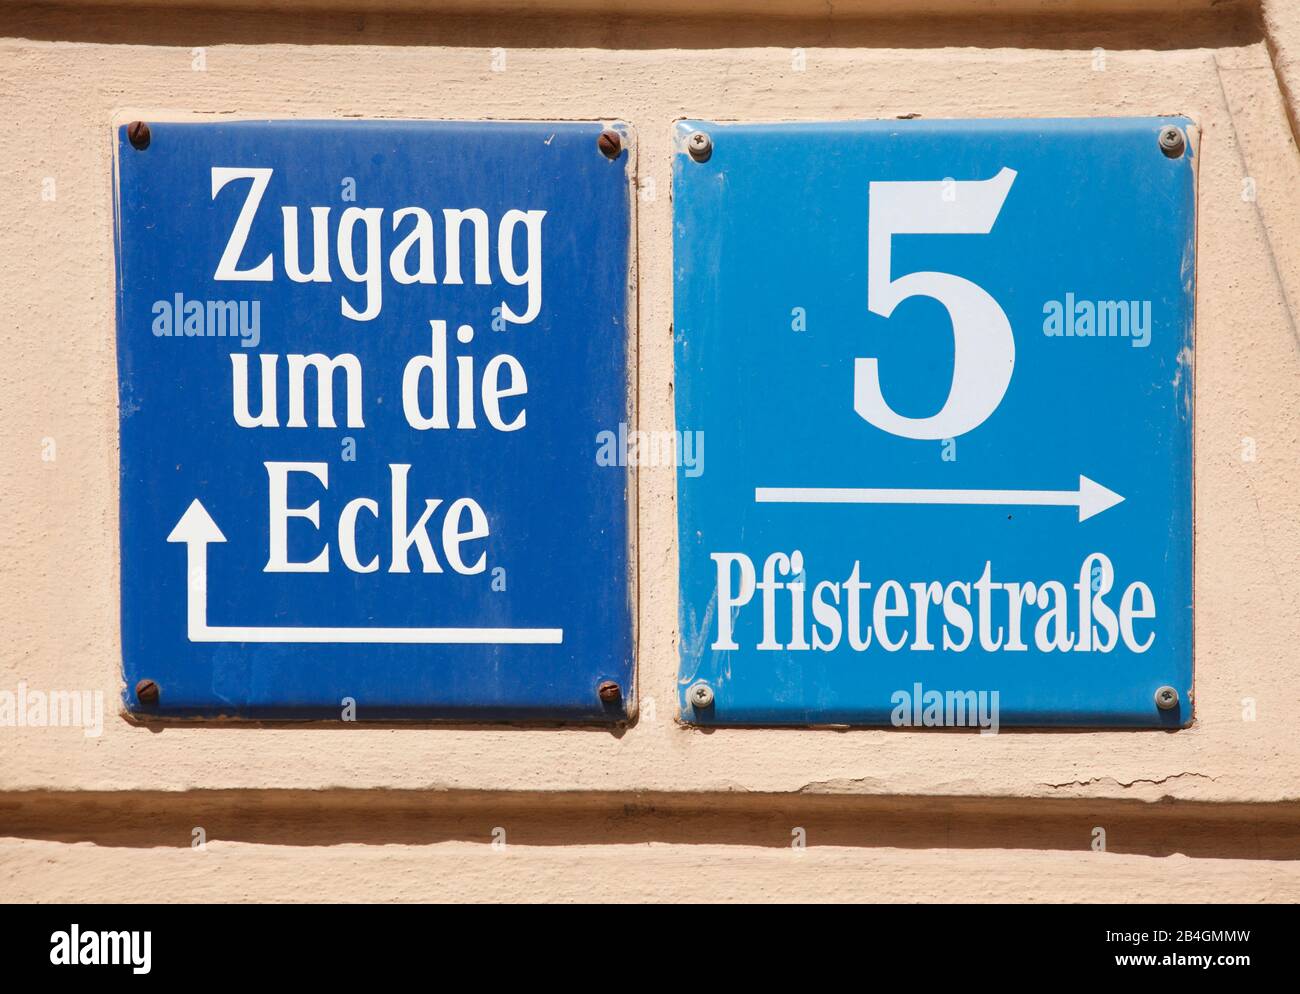 Blaues Hausnummernschild Nummer Fünf, Schild Zugang um die ecke, am Platzl, Pfisterstraße, München, Oberbayern, Bayern, Deutschland, Europa, München, Stock Photo